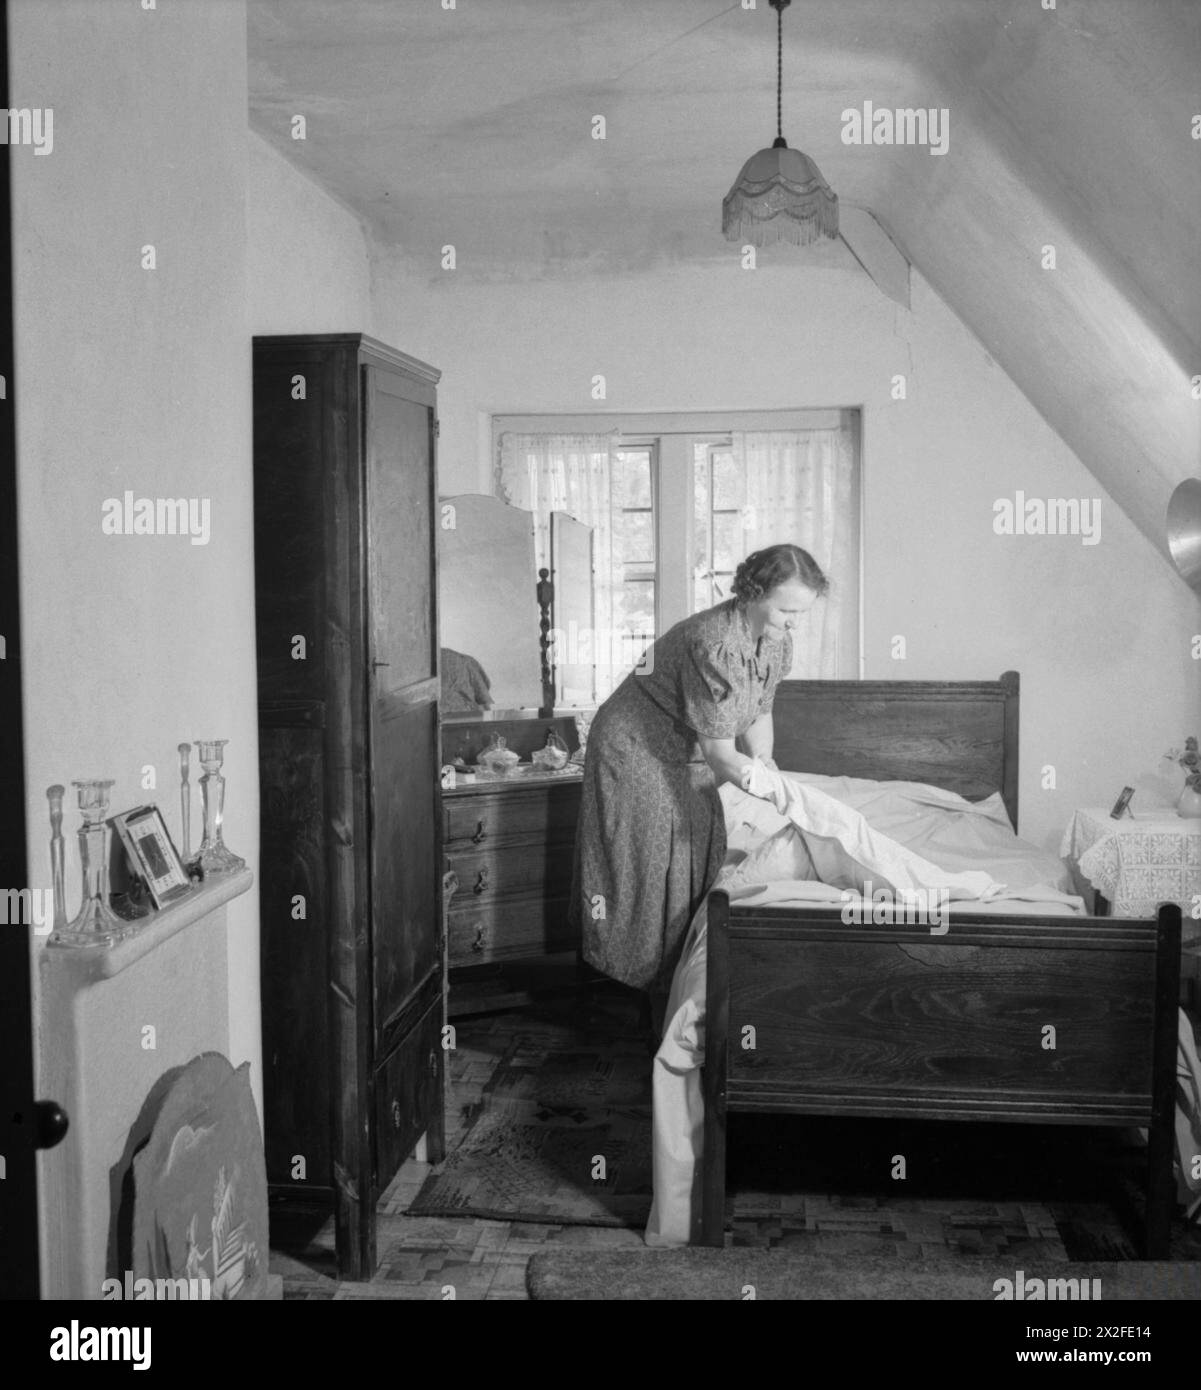 LES CHALETS DE FREEFOLK : LA VIE DANS LE VILLAGE DE FREEFOLK, HAMPSHIRE, ANGLETERRE, Royaume-Uni, 1943 - Mme Shadwell change le linge de lit dans l'une des chambres de sa maison dans le village de Freefolk dans le Hampshire. Chacun des salons et des chambres de ces maisons a une «cheminée carrelée moderne» (vue ici à gauche de la photo) et un éclairage électrique est installé dans toute la maison Banque D'Images